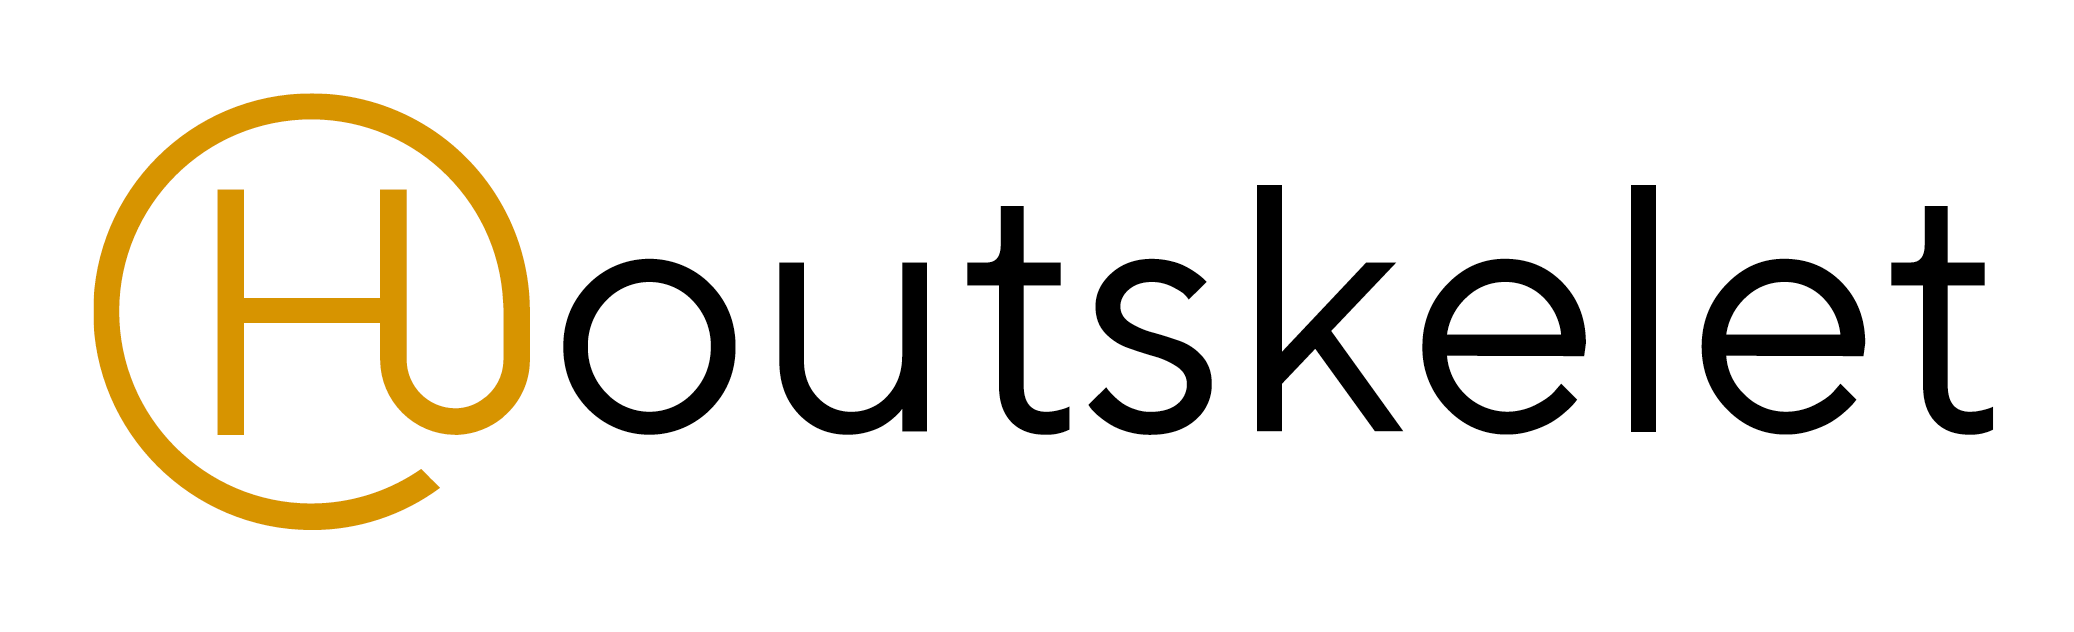 @houtskelet logo